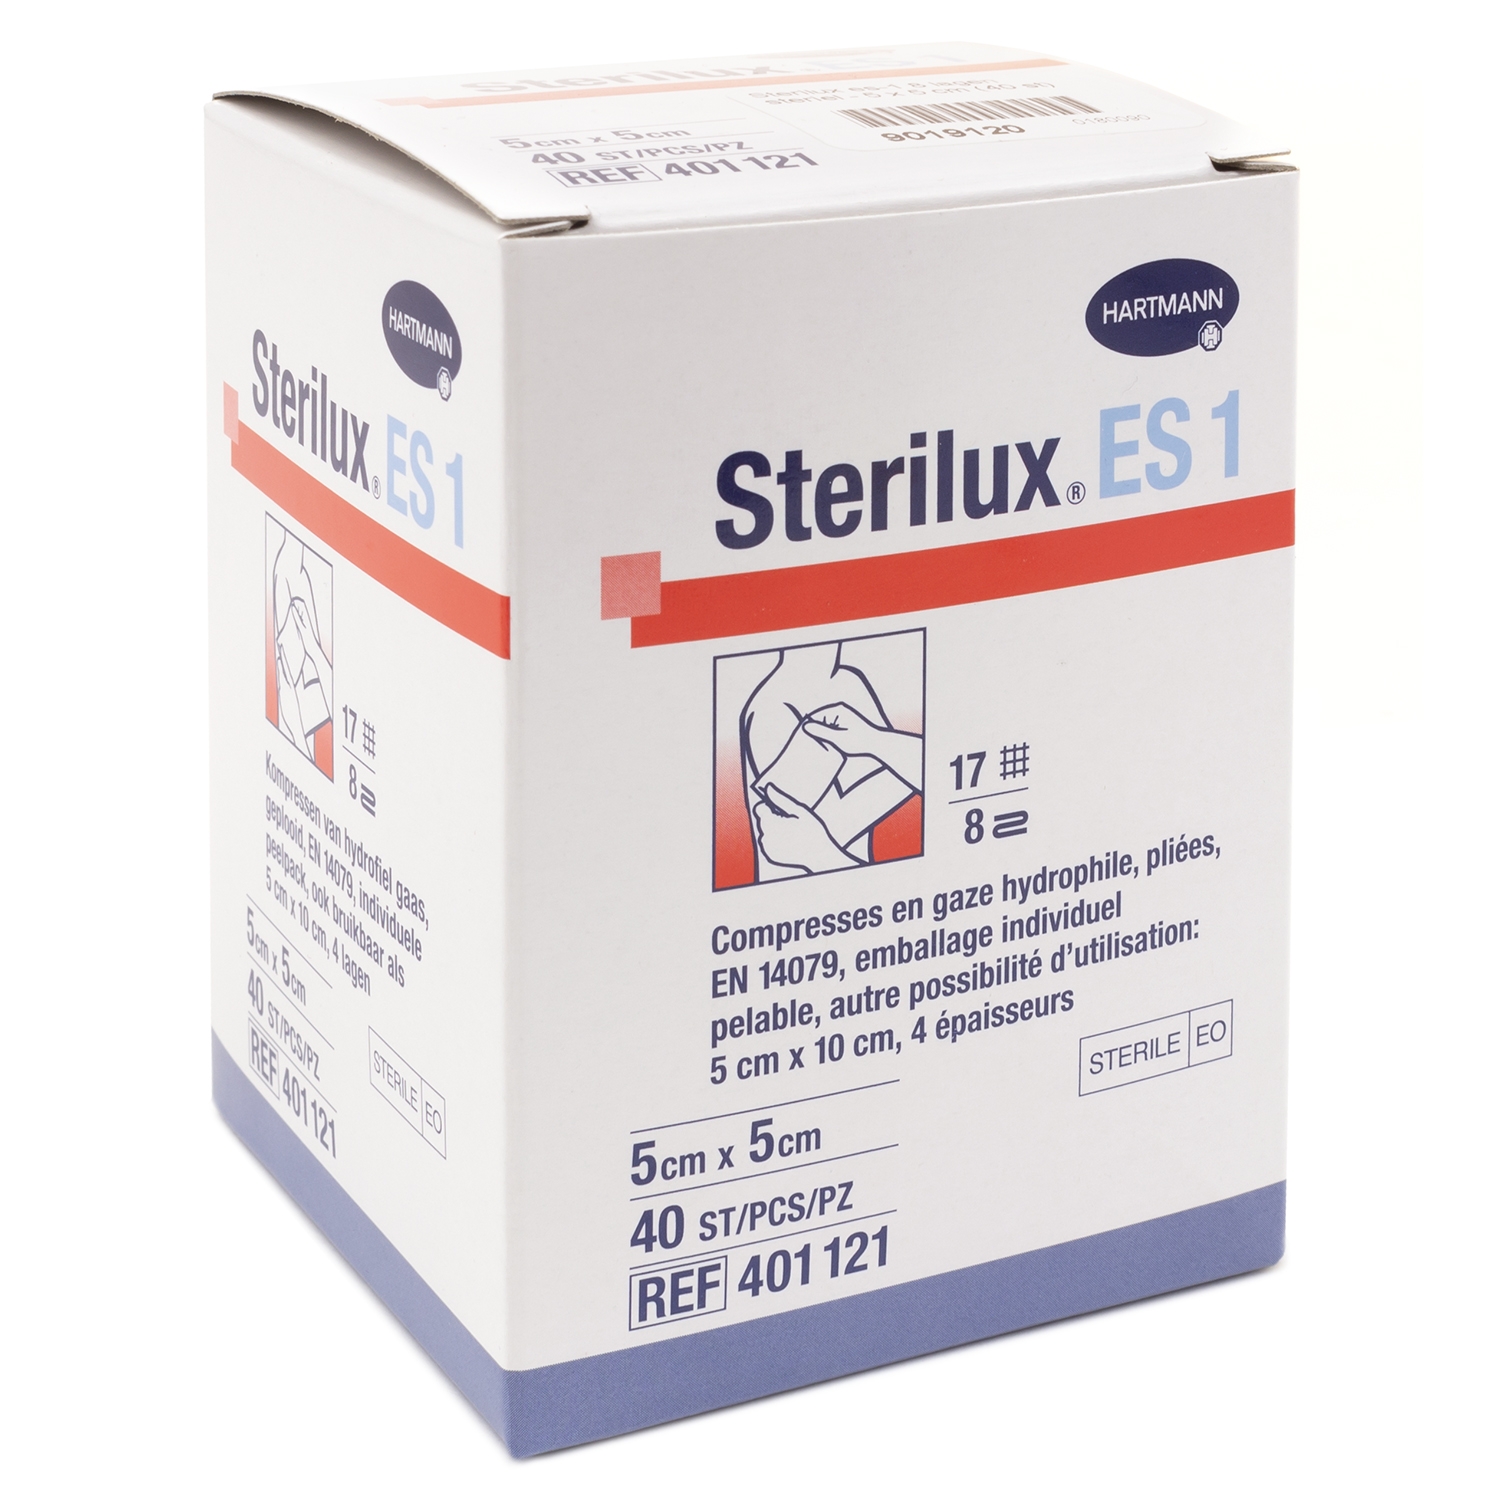 Compresse stérile Sterilux - 8 couches - 5 x 5 cm (40 x 1 pcs)